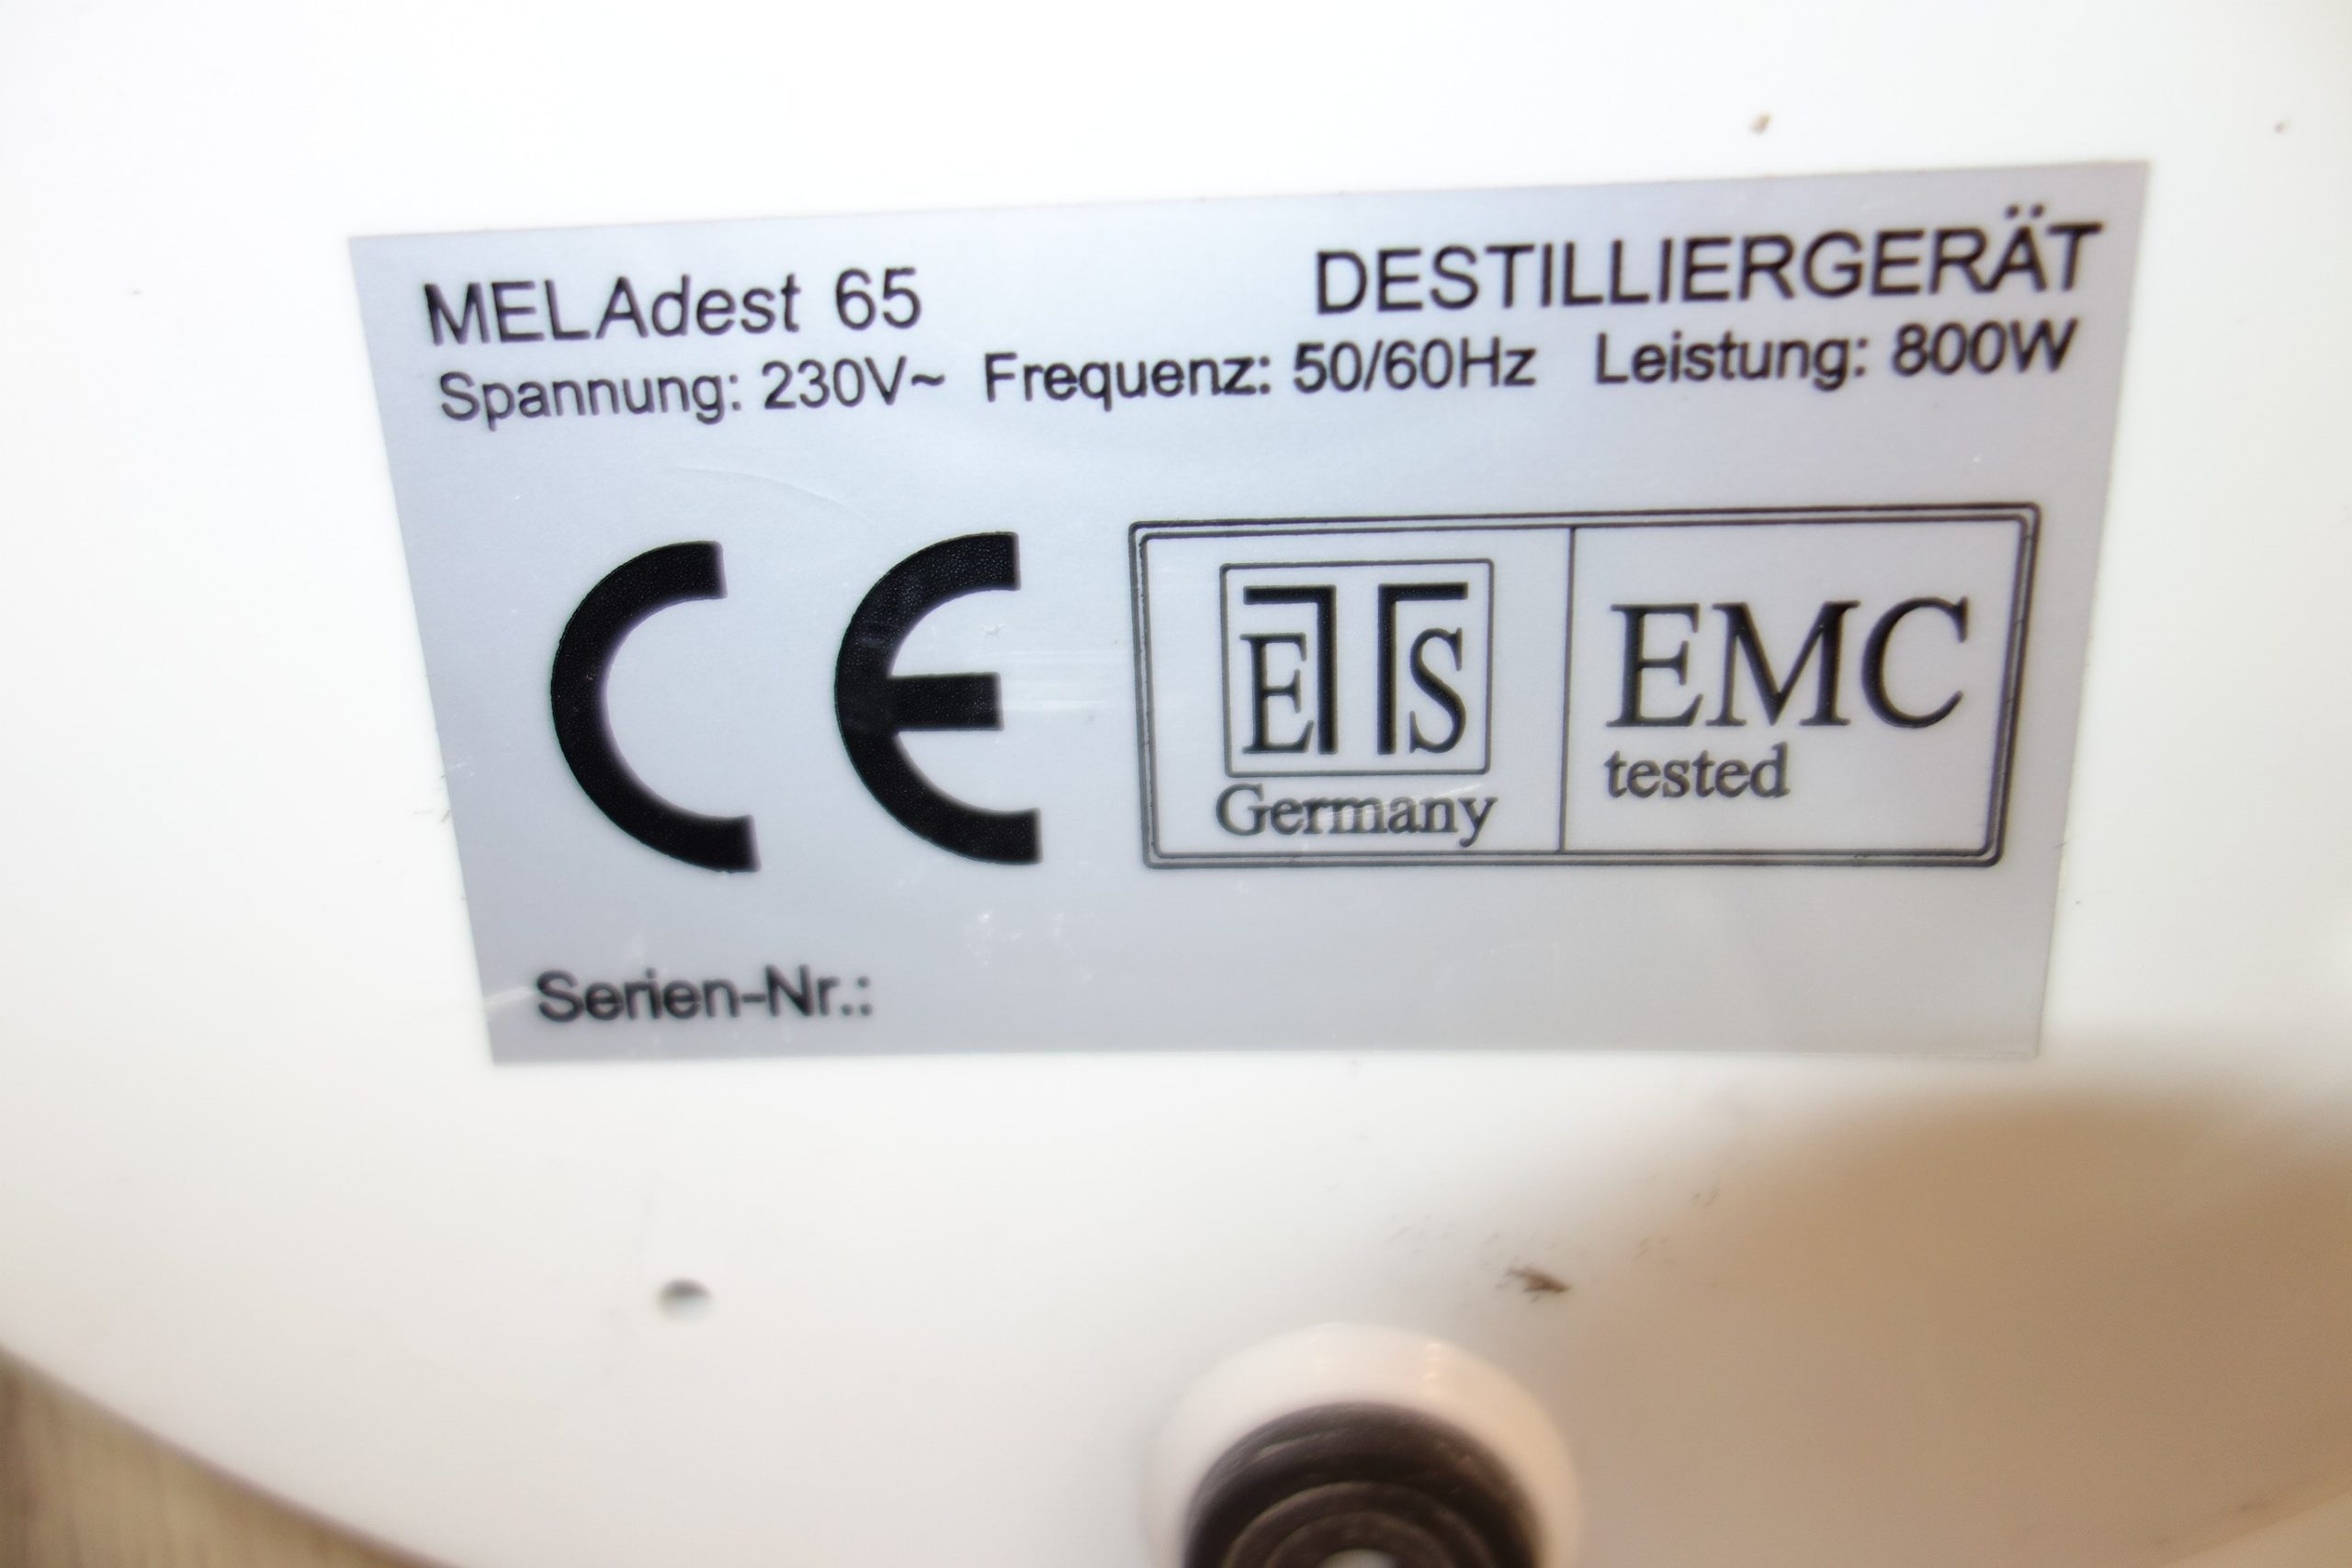 melag-meladest-65-wasser-destilliergeraet-5042